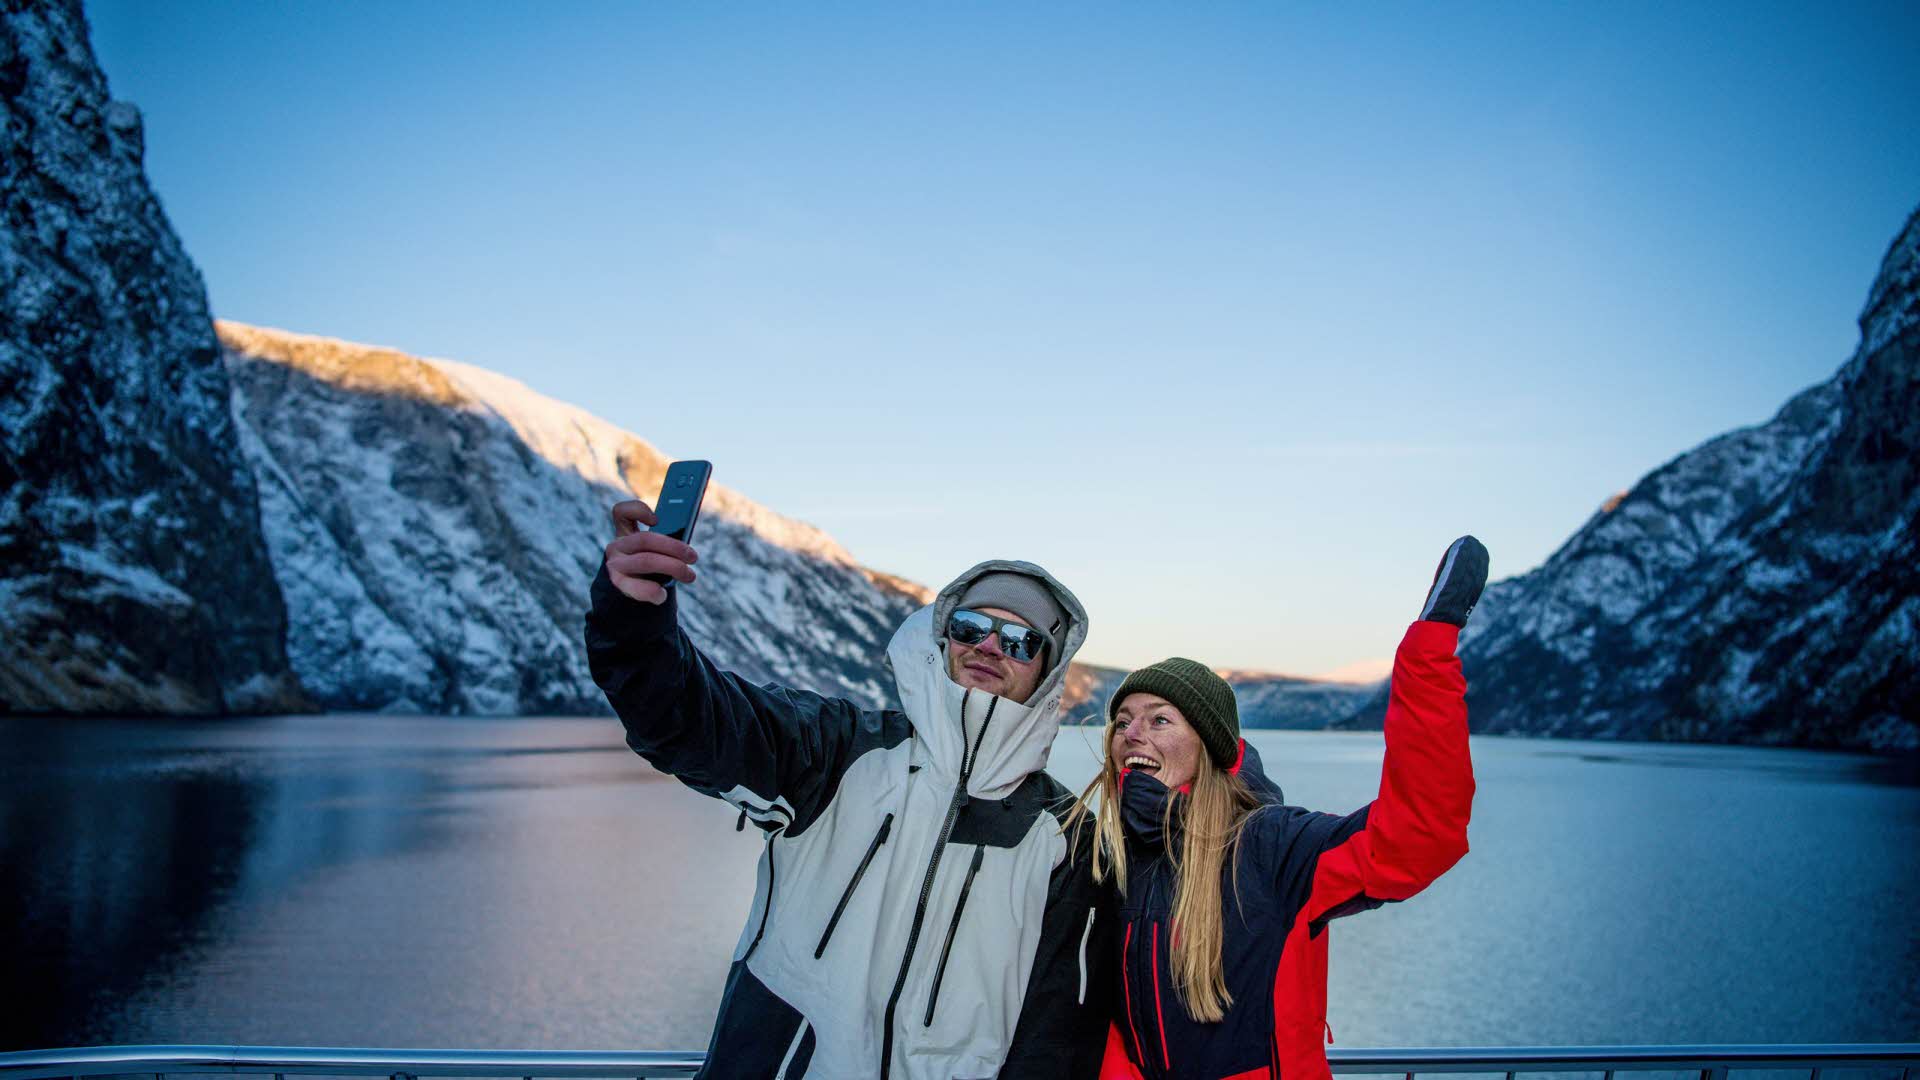 冬のブルーアワーに、ネーロイフィヨルデンのフィヨルドクルーズ船で自撮りをする男の子と女の子